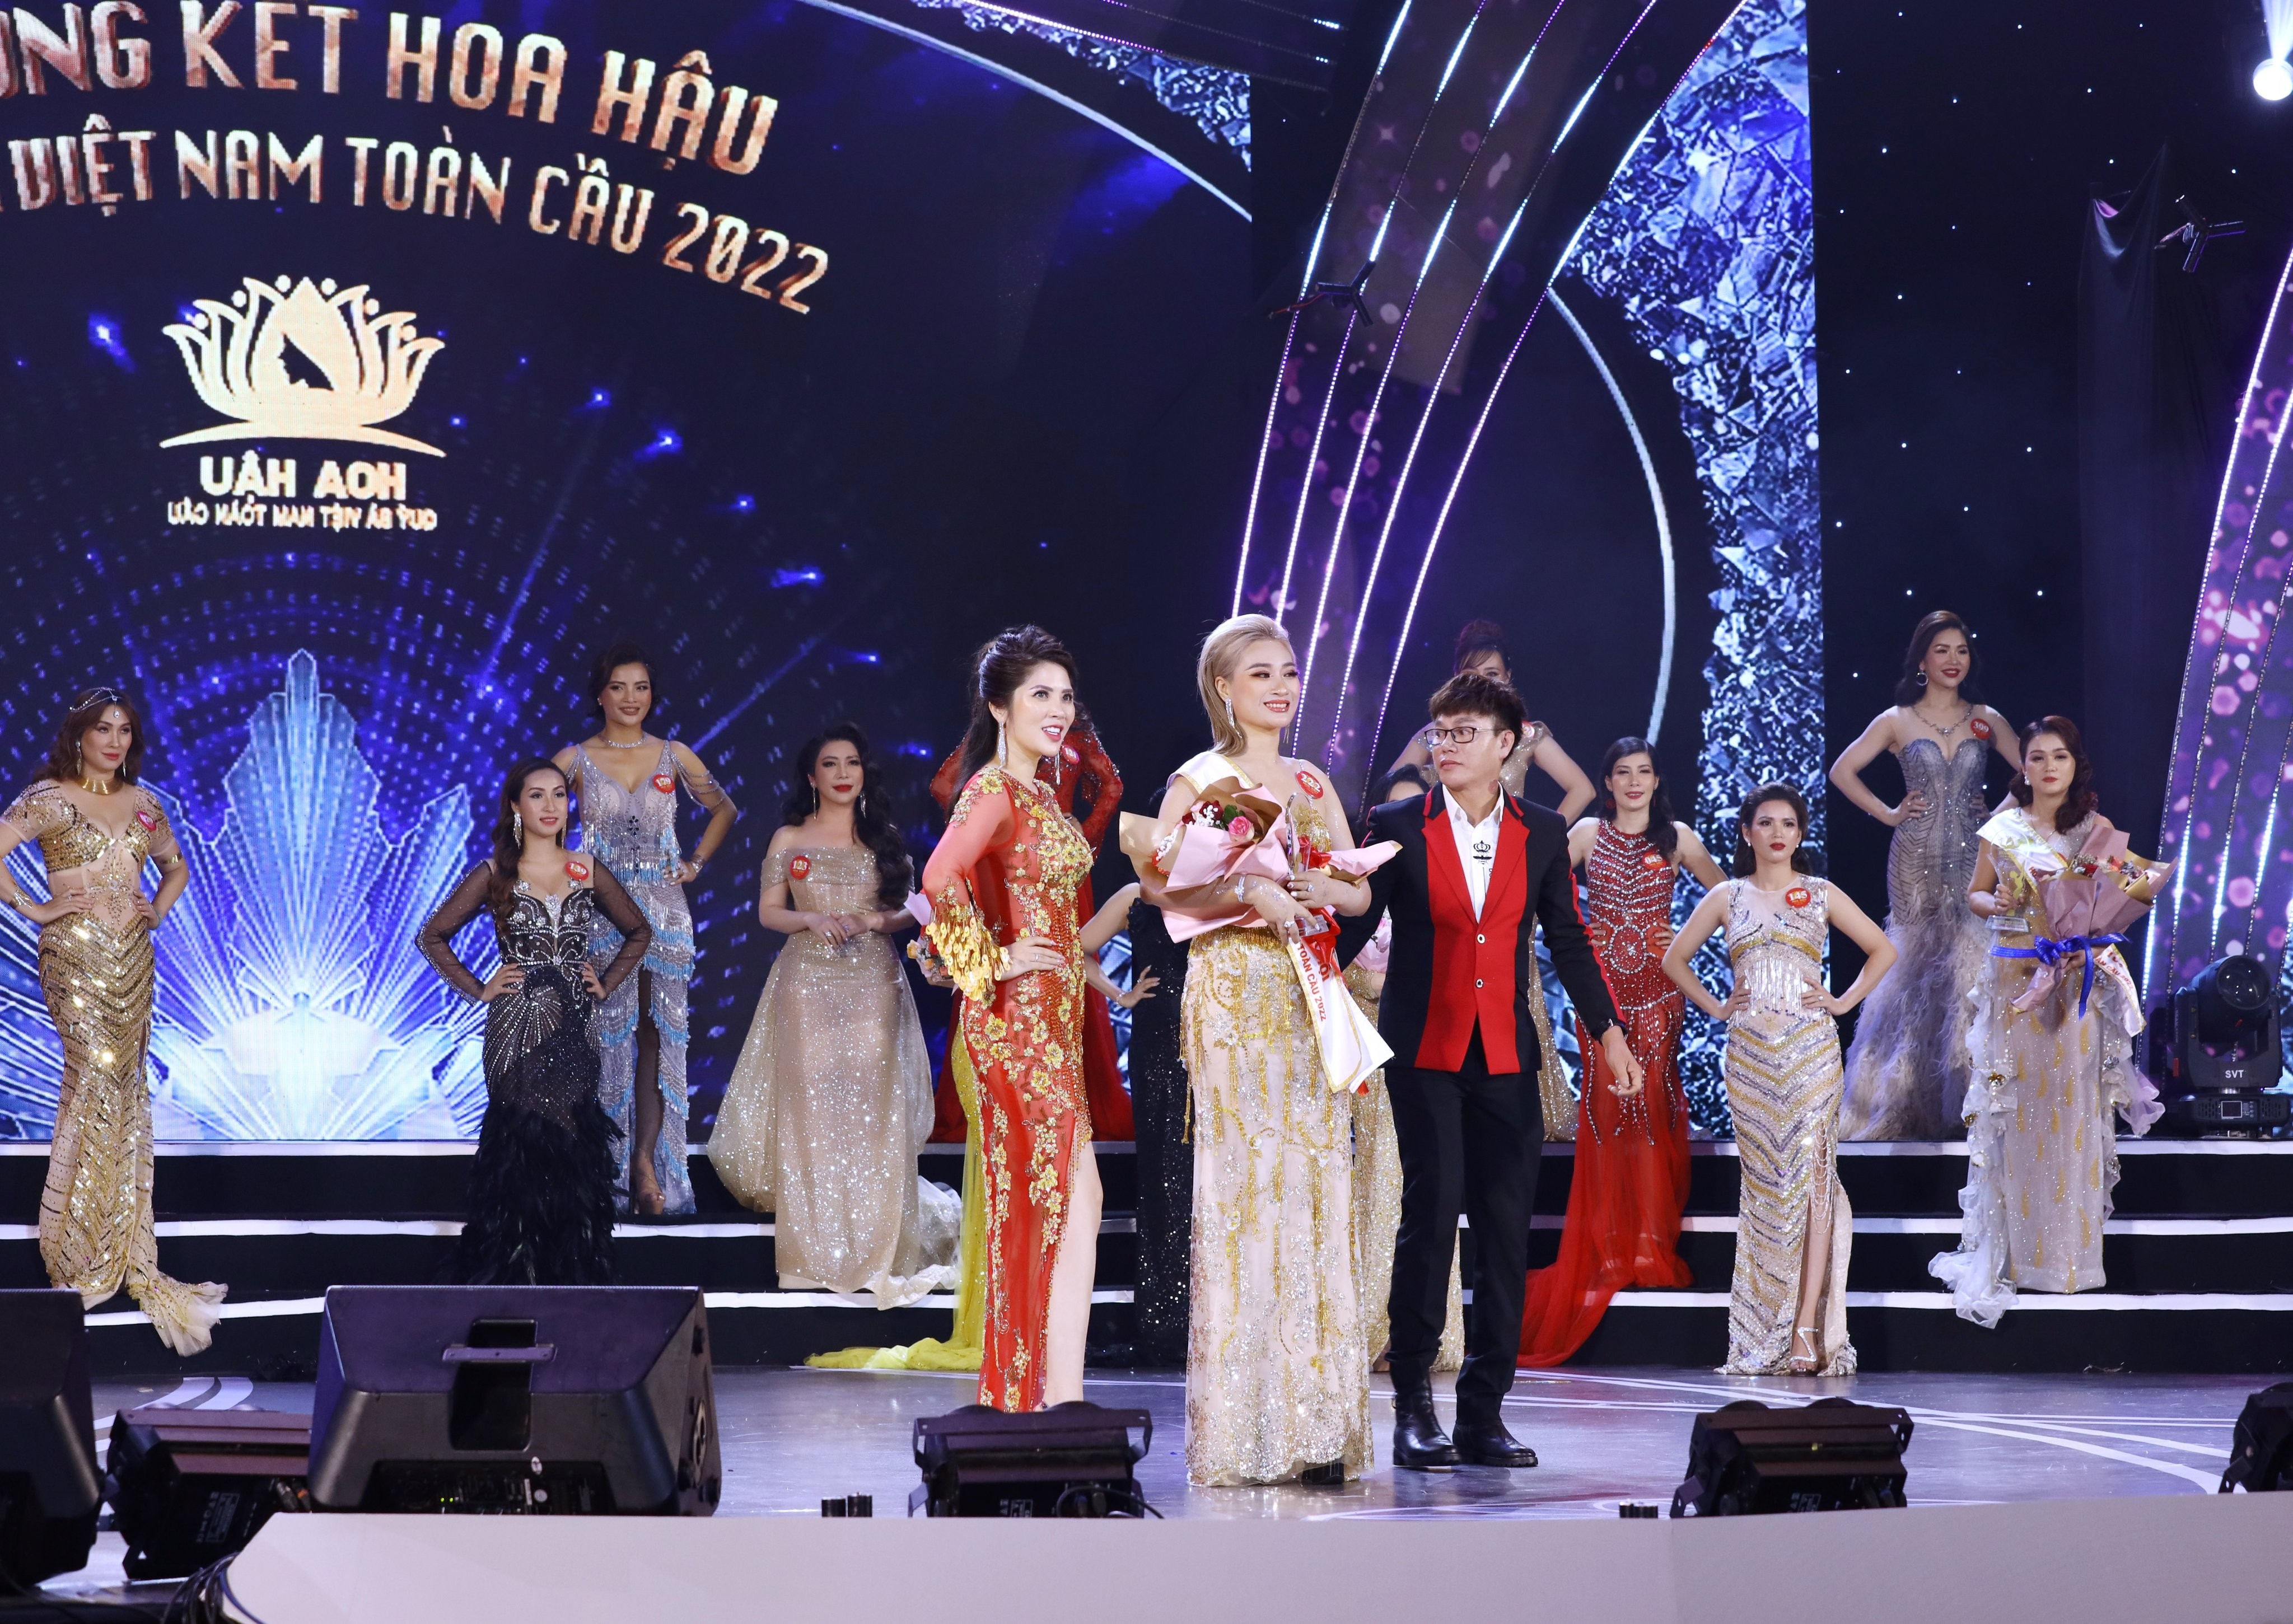 Người đẹp Thanh Huyền làm thành viên BGK Hoa hậu Quý bà Việt Nam Toàn cầu 2022